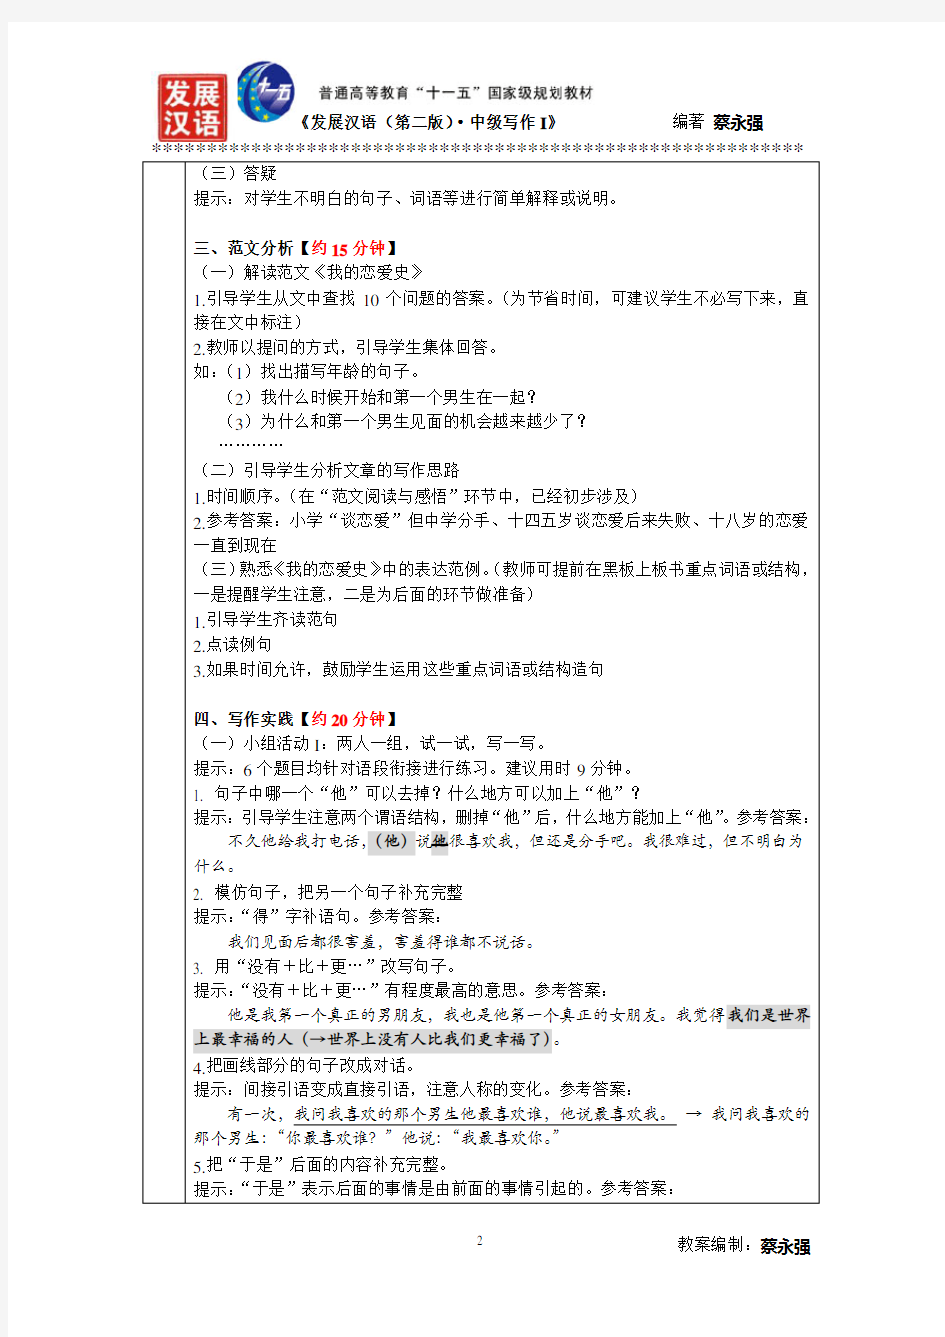 发展汉语(第二版)中级写作Ⅰ教案--第6课